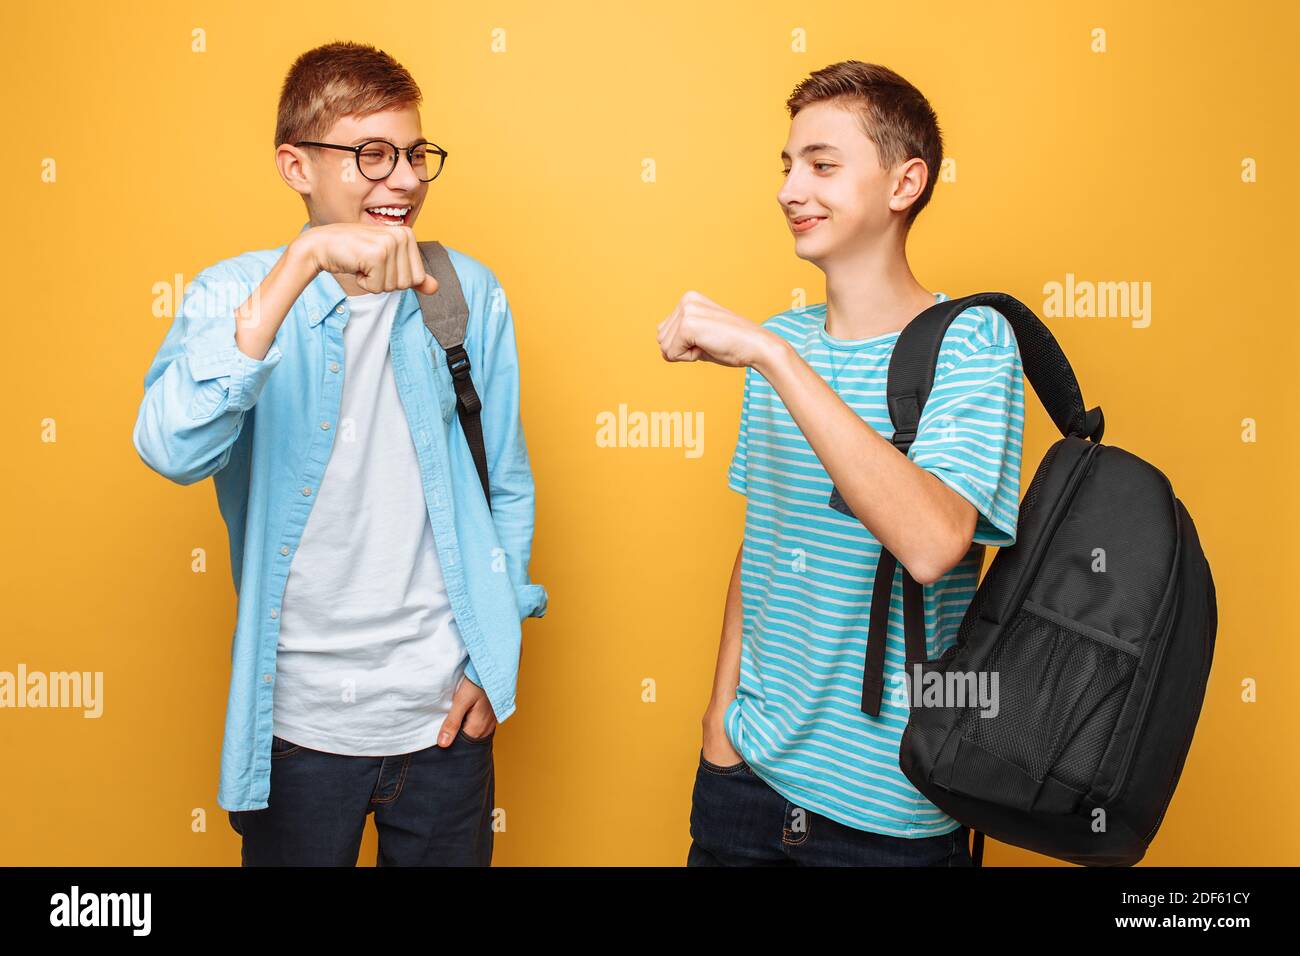 Dos adolescentes con estilo, chicos se saludan unos a otros, sobre un fondo amarillo Foto de stock